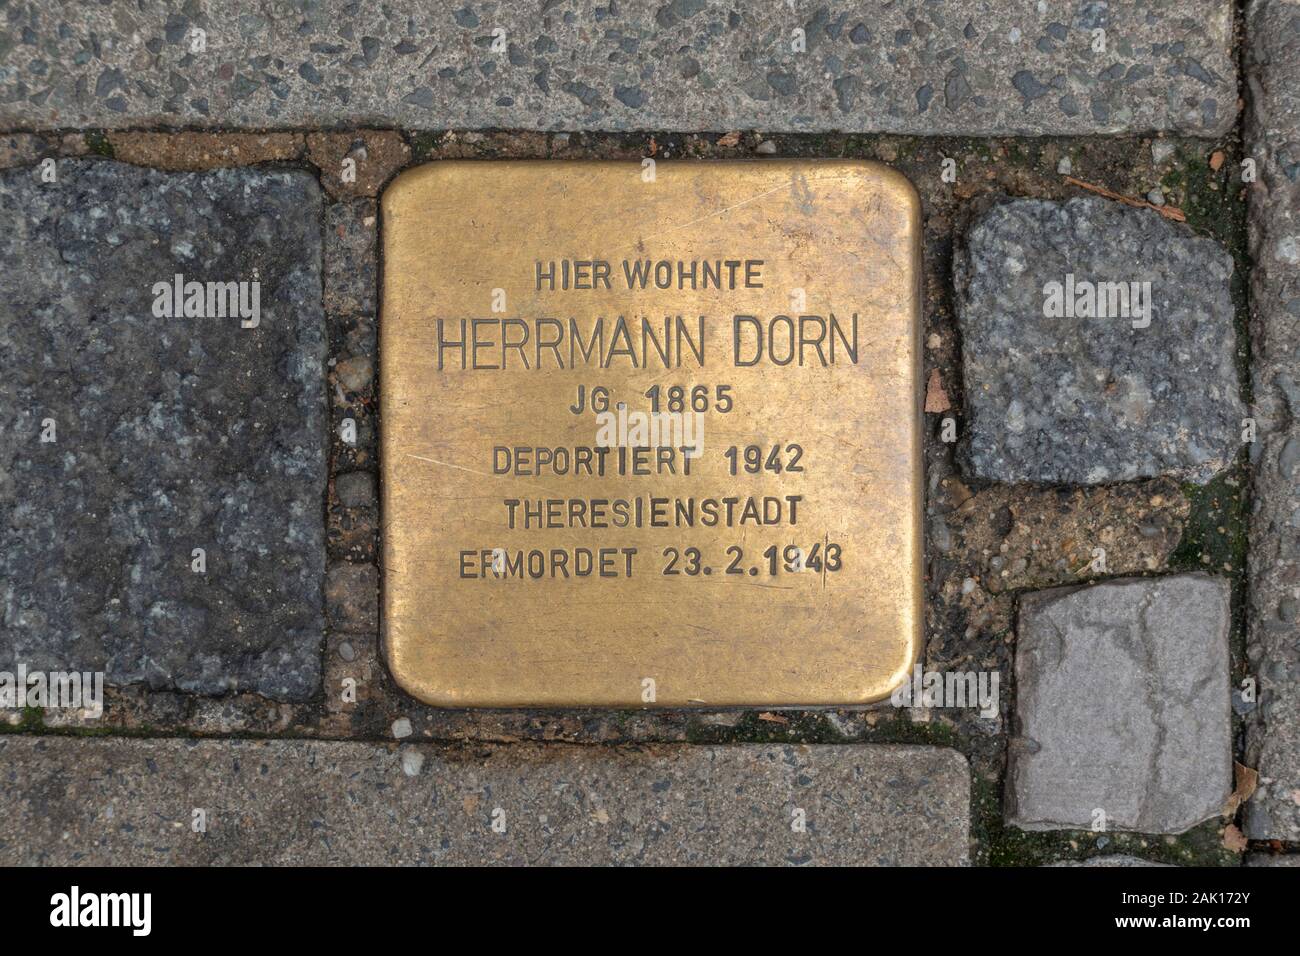 Pietre da burattone segnapunti commemorativi dell'Olocausto per Herrmann Dorn a Coburg, Baviera, Germania. Foto Stock